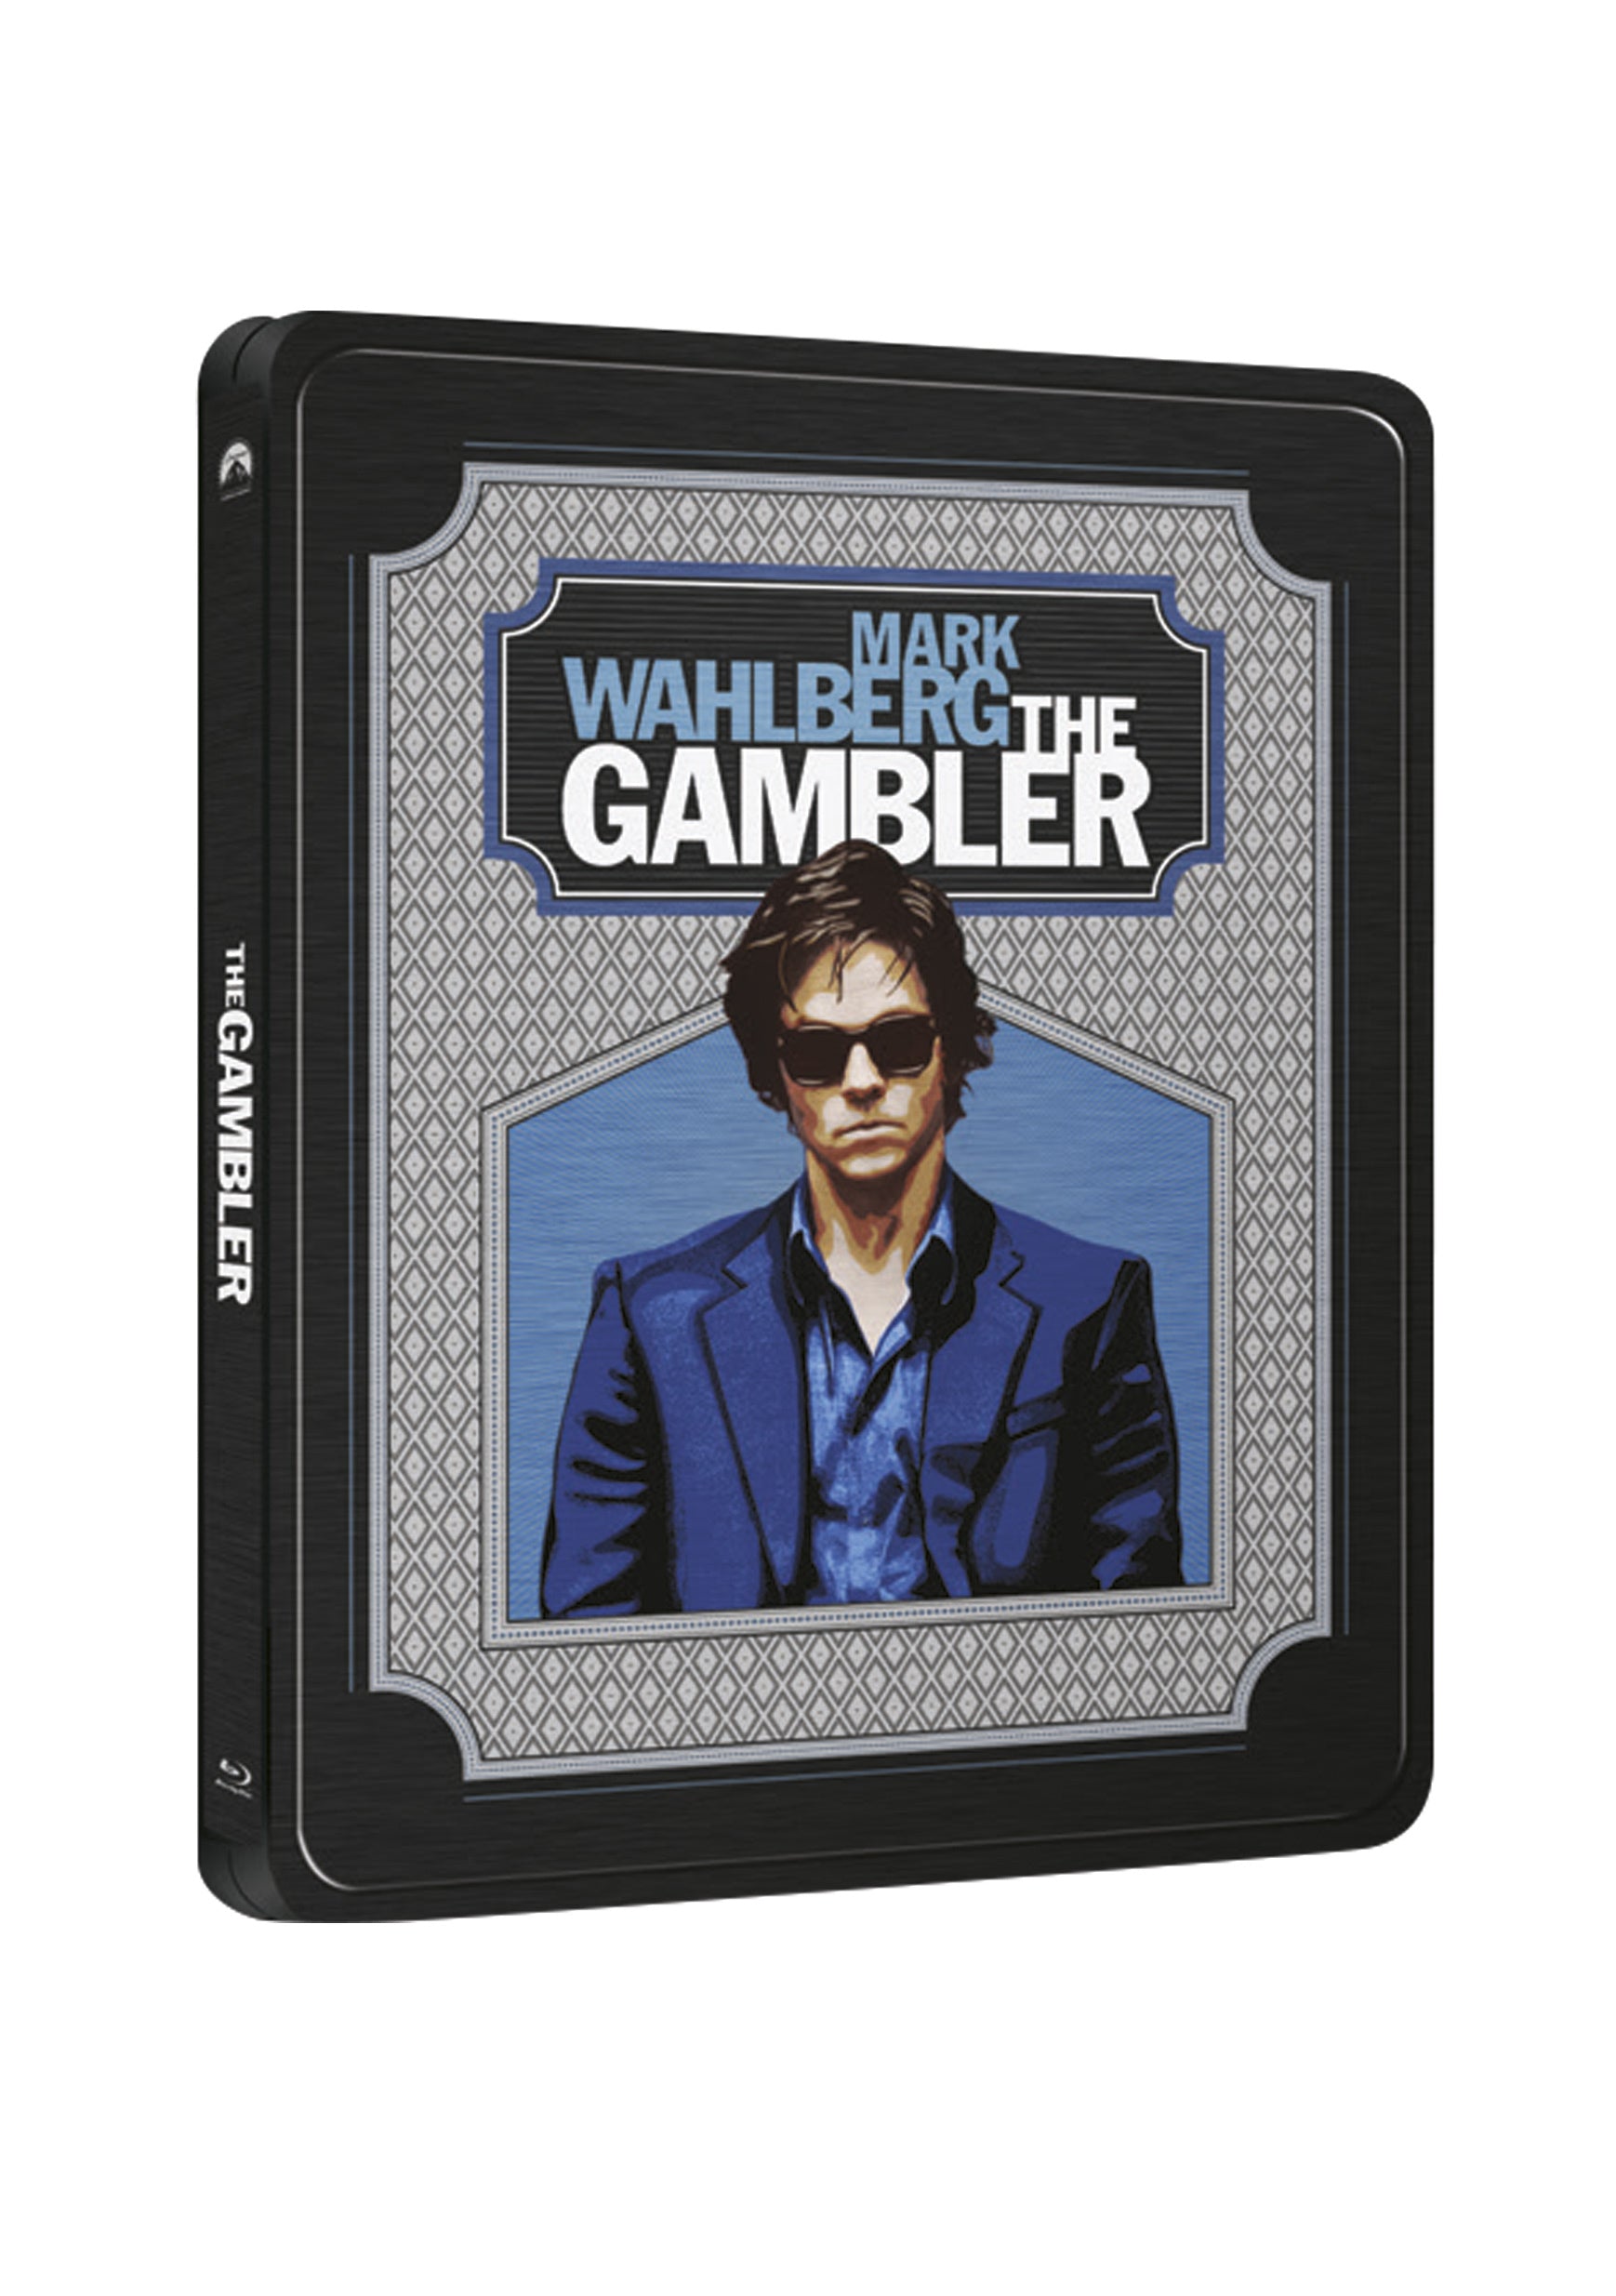 The Gambler BD - steelbook / The Gambler - Czech version